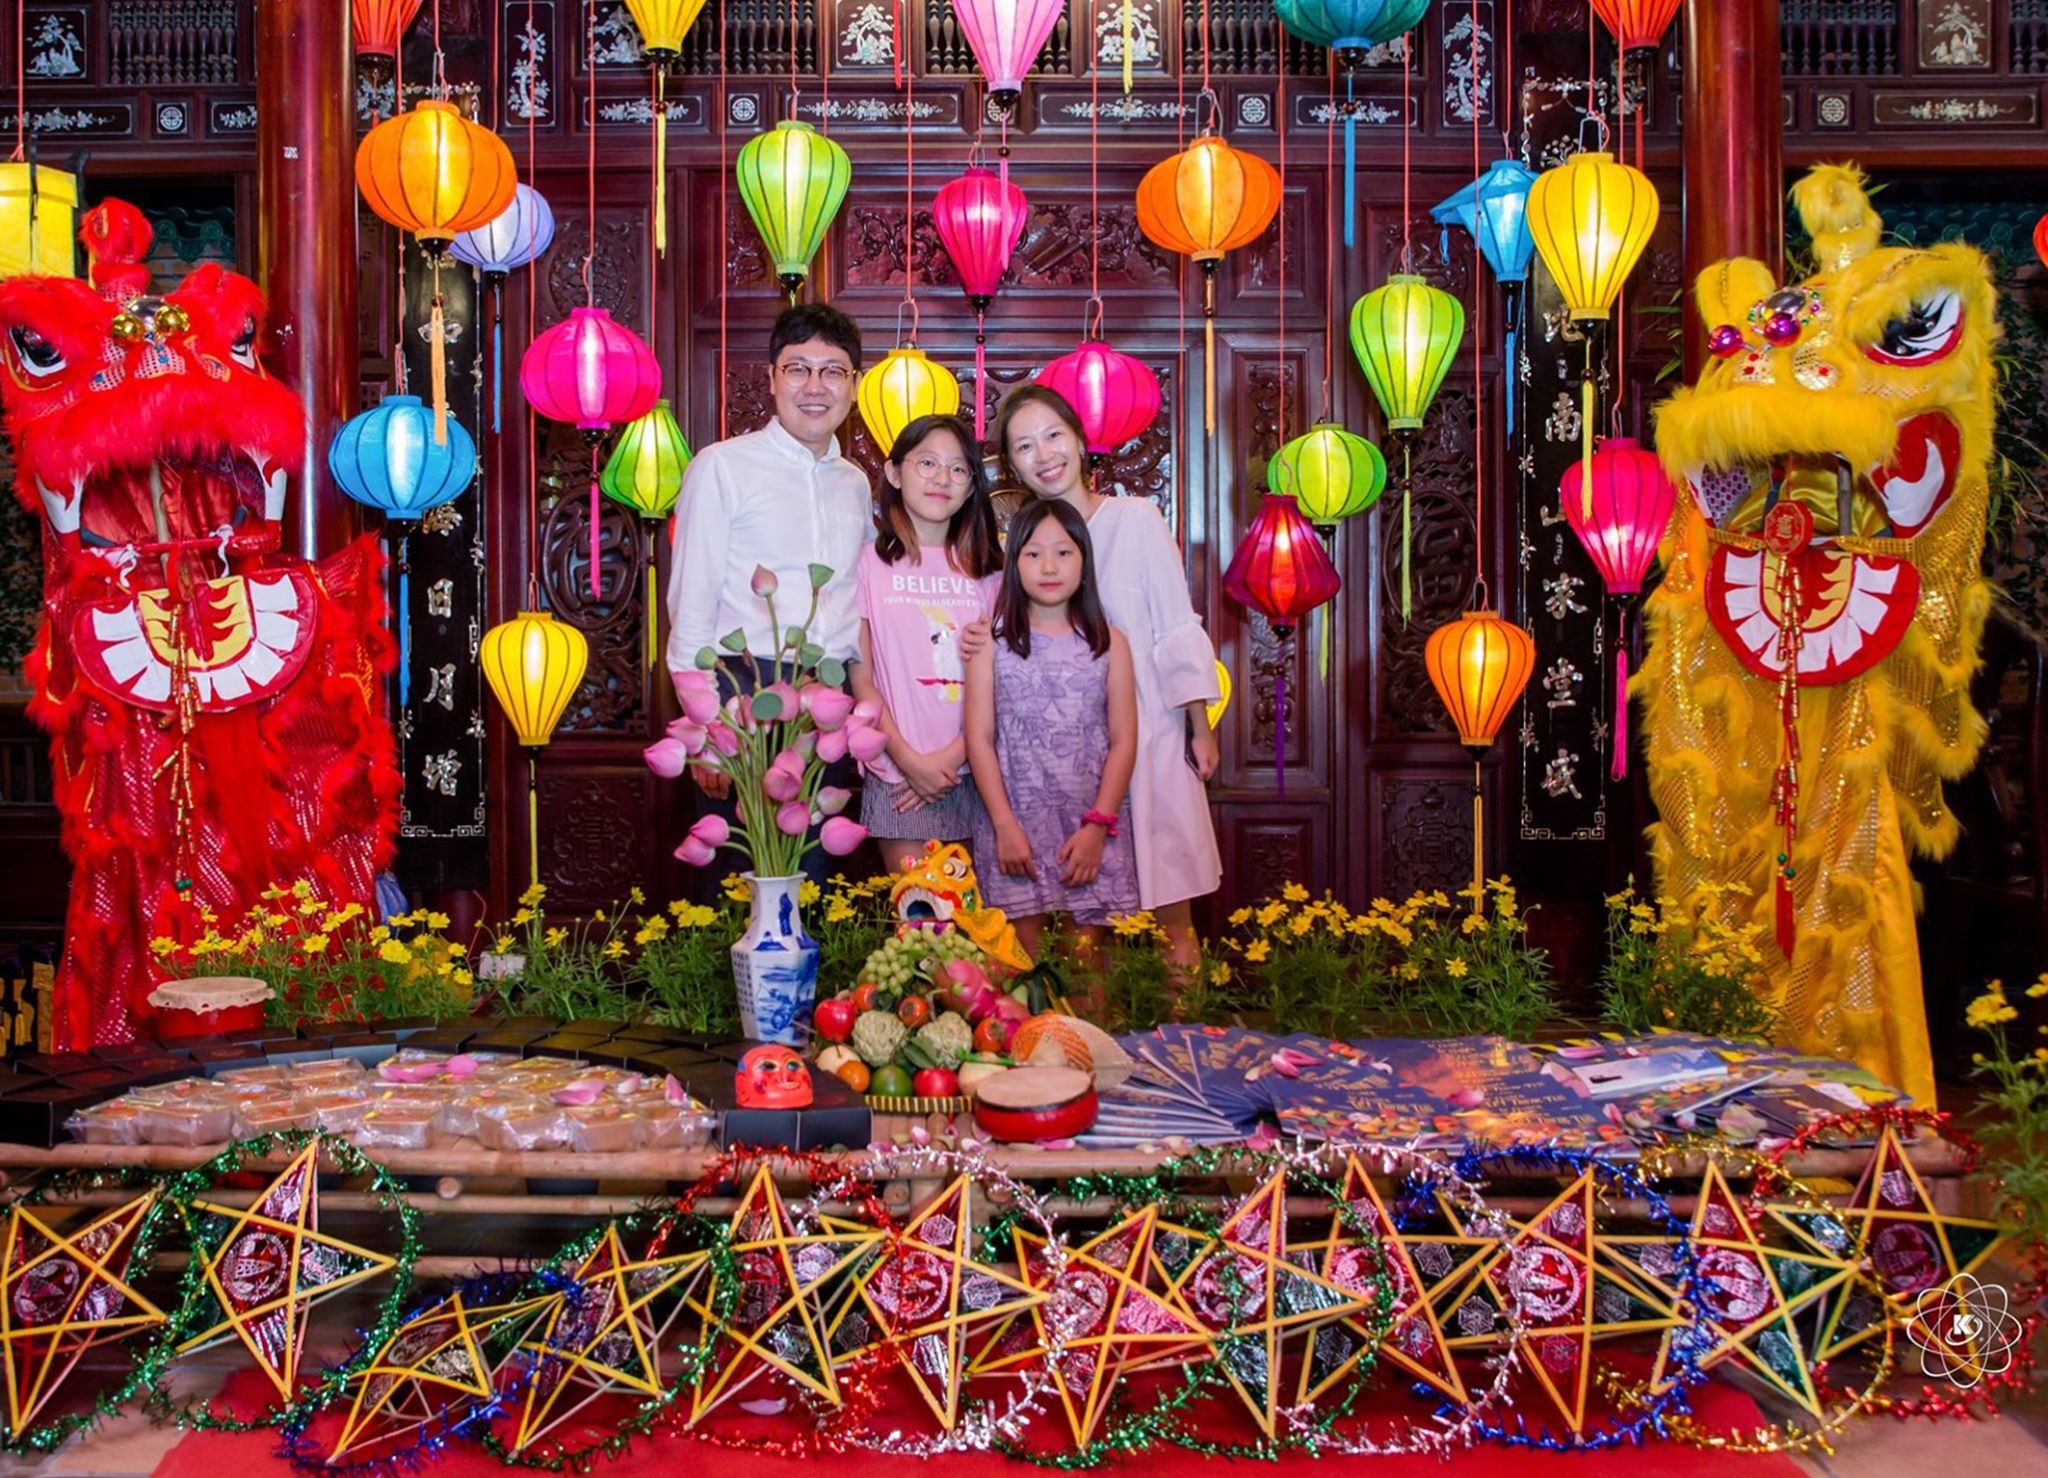 Trung Thu, Tết Đoàn viên: Trung Thu và Tết Đoàn Viên là hai lễ hội quan trọng nhất trong năm của người Việt. Những bức ảnh về hai lễ hội này được thể hiện bằng những hình ảnh ấn tượng, đầy sáng tạo và toát lên nét đẹp văn hóa Việt Nam. Hãy cùng điểm qua những bức ảnh đẹp nhất của hai lễ hội này.